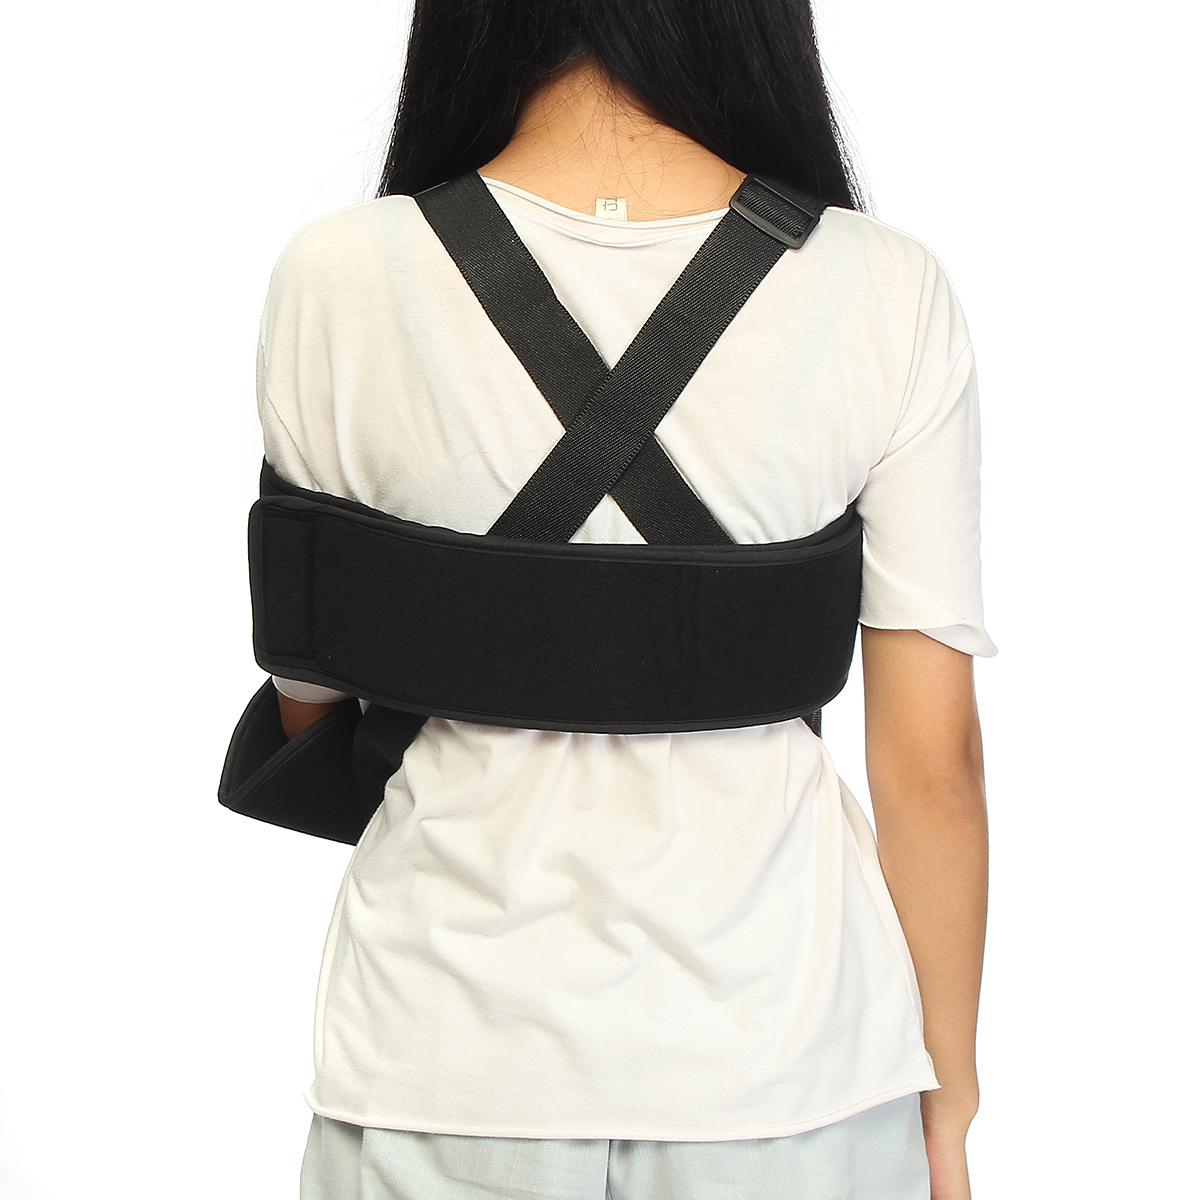 Adjustable-Medical-Arm-Shoulder-Holding-Brace-Elbow-Support-Wrap-Strap-Belt-1192646